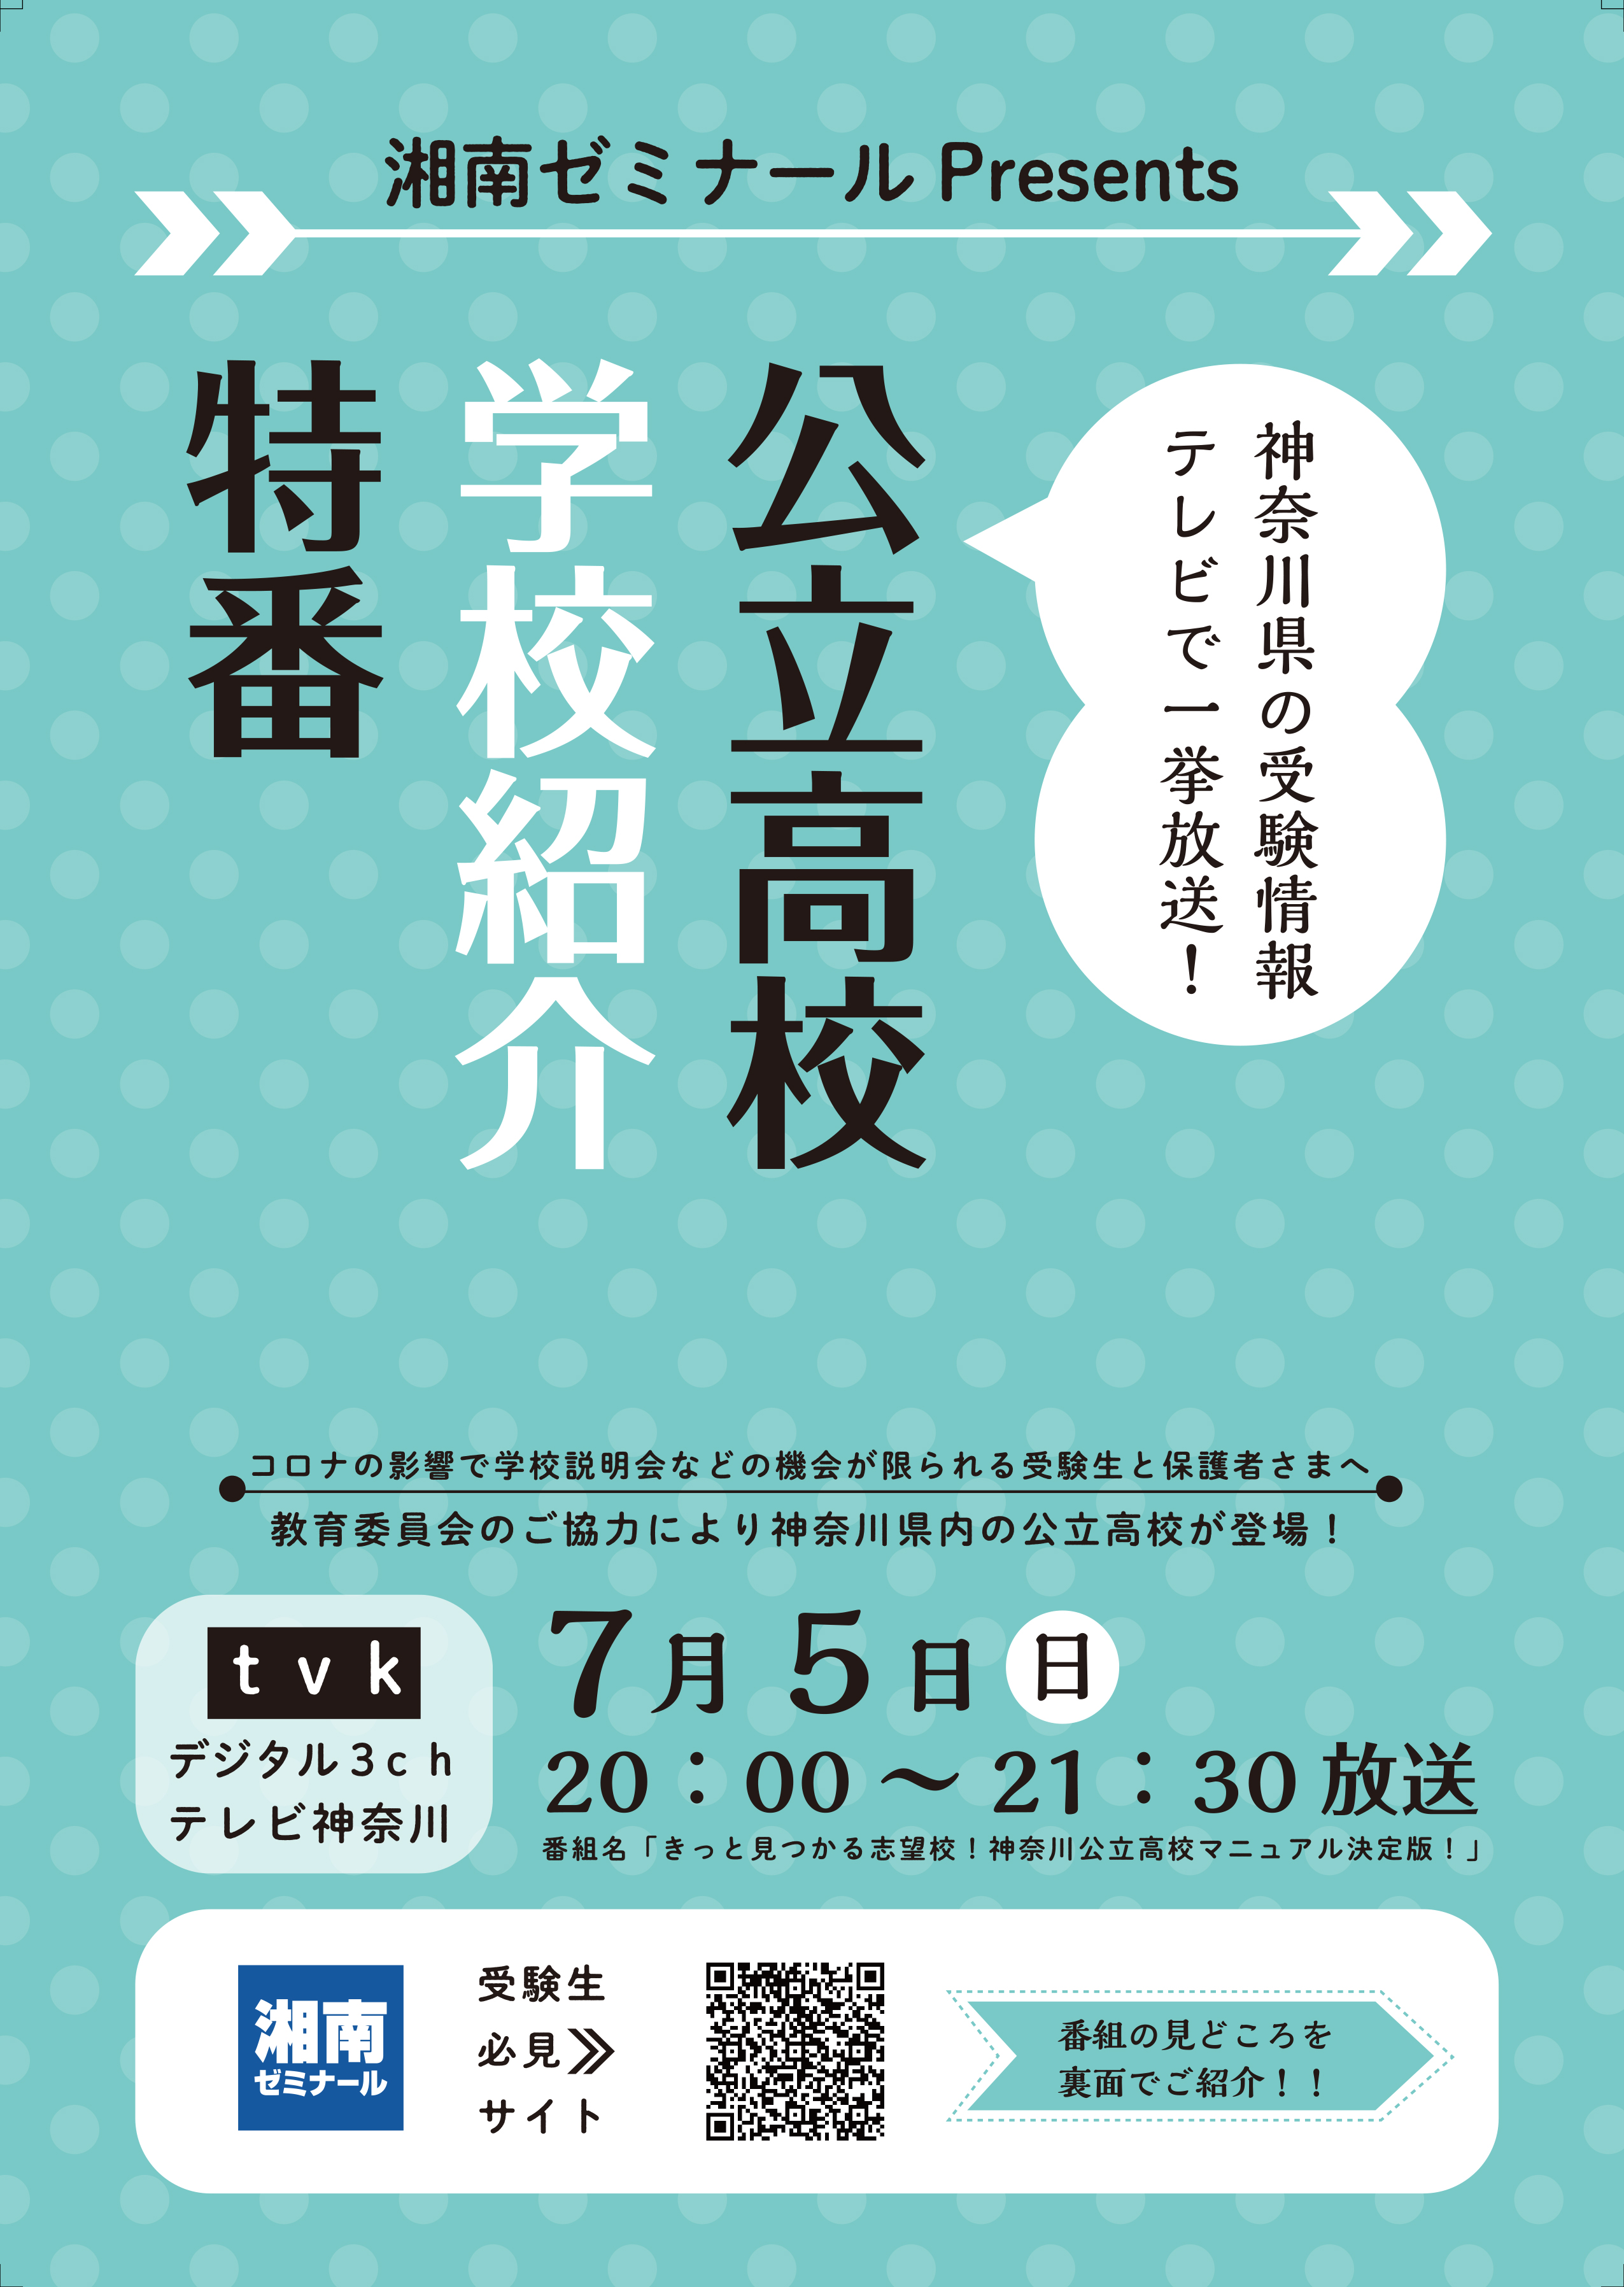 ７月５日 日 Tvk デジタル3ch にて神奈川県 公立高校出演の特別番組を放送 株式会社湘南ゼミナールのプレスリリース